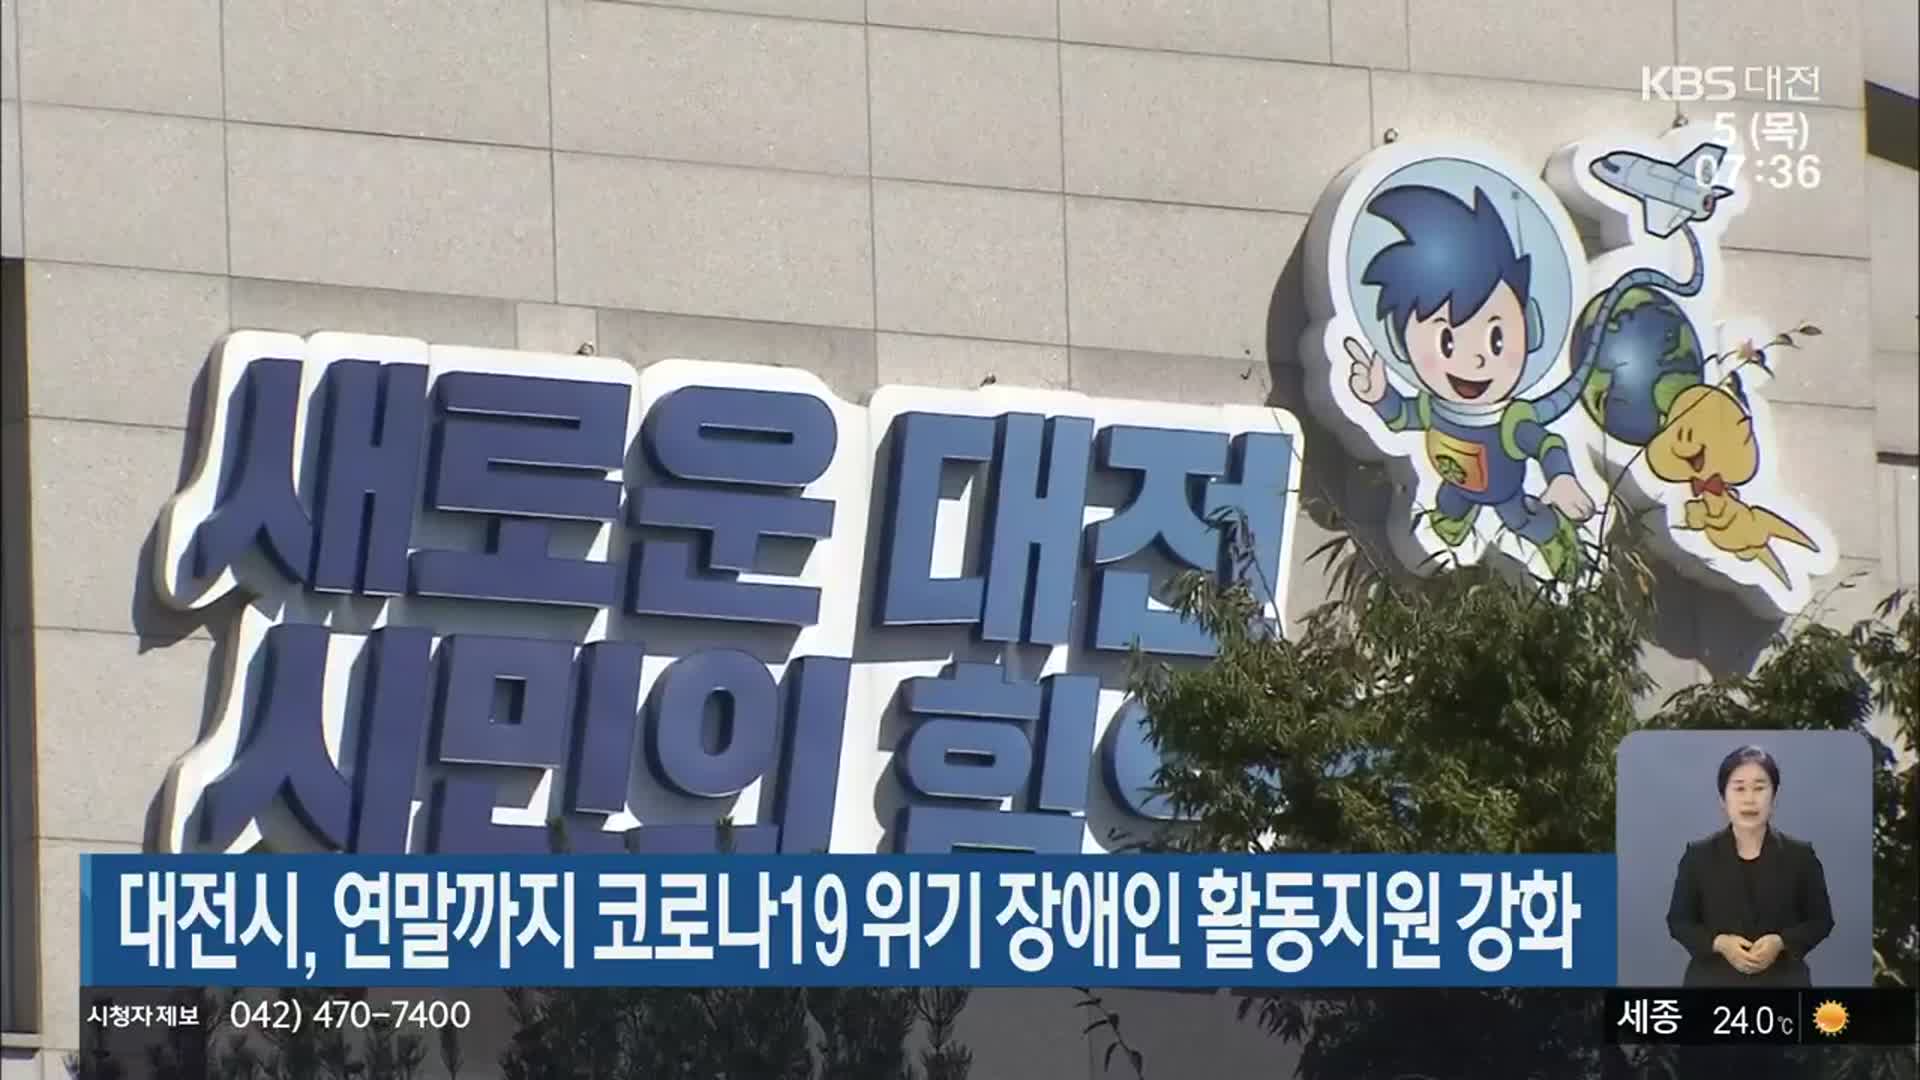 대전시, 연말까지 코로나19 위기 장애인 활동지원 강화